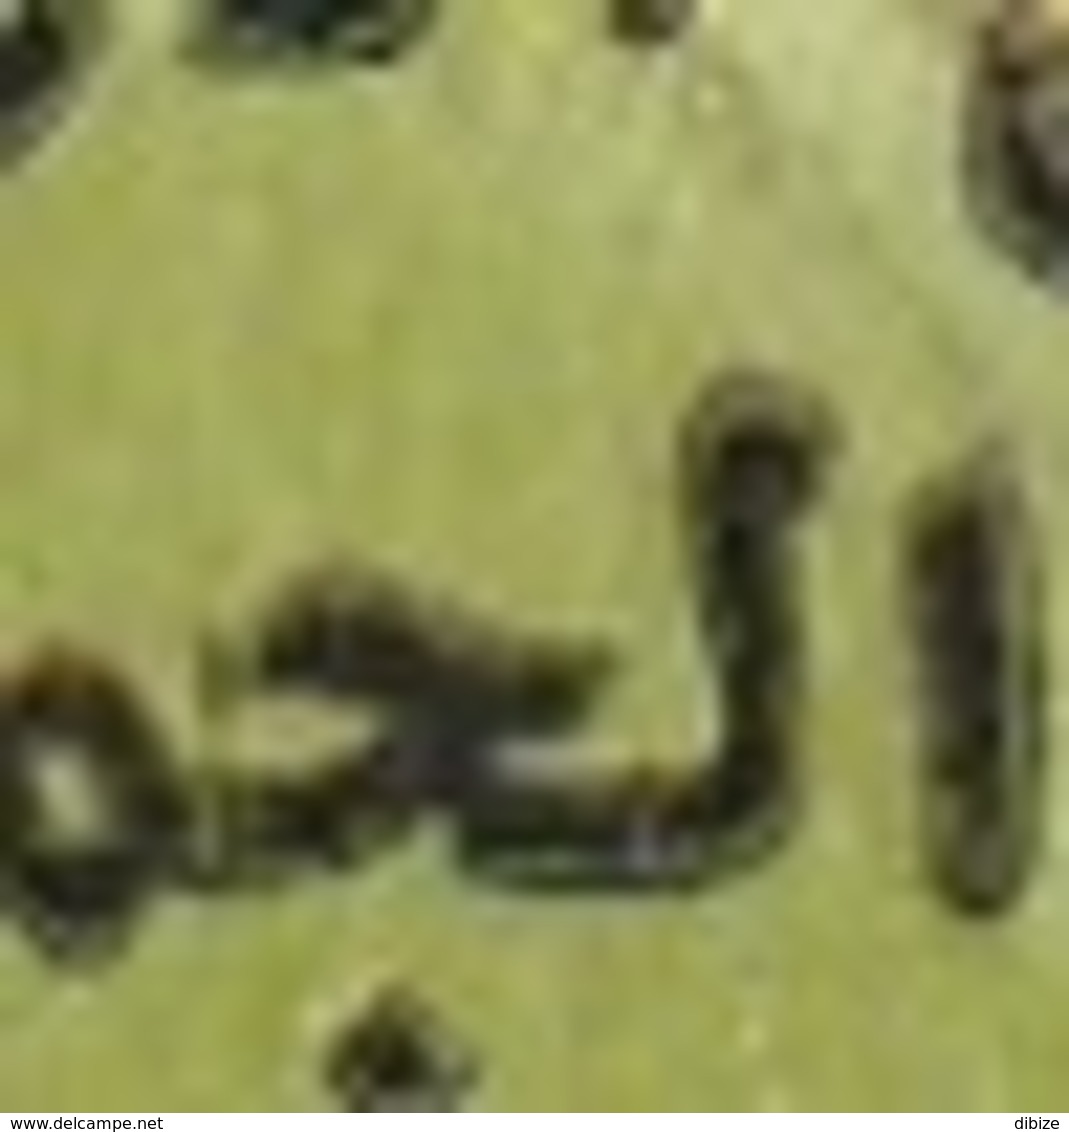 Maroc. Coin Daté De 6 Timbres, Poste Aérienne Yvert N° 124 De 1987. Surcharge Arabe. Variétés. Erreurs. - Oddities On Stamps